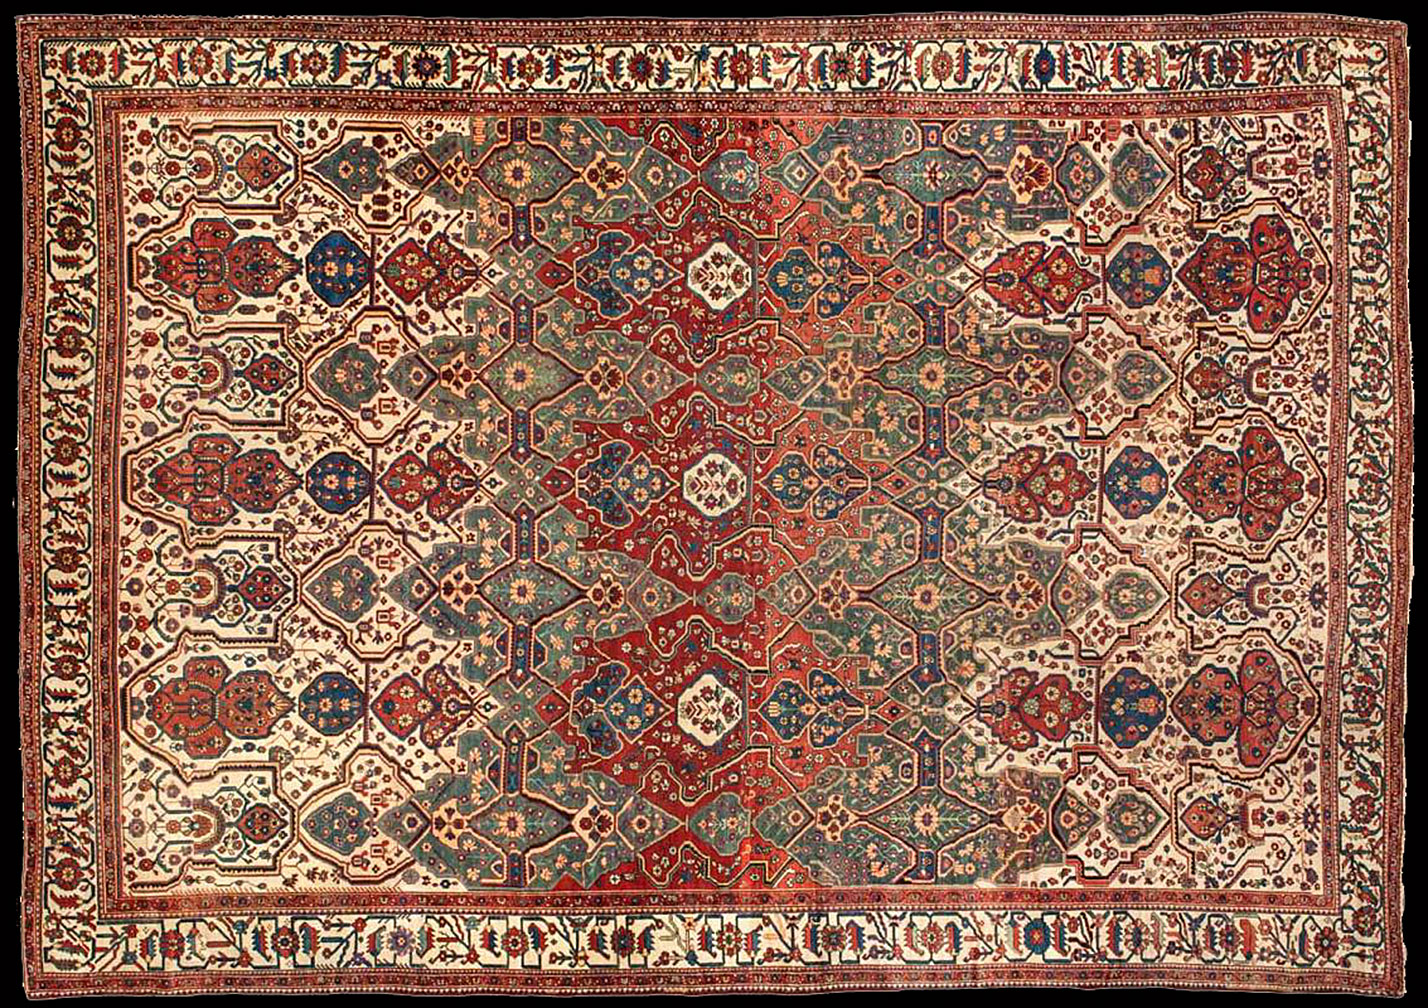 Antique baktiari Carpet - # 51811